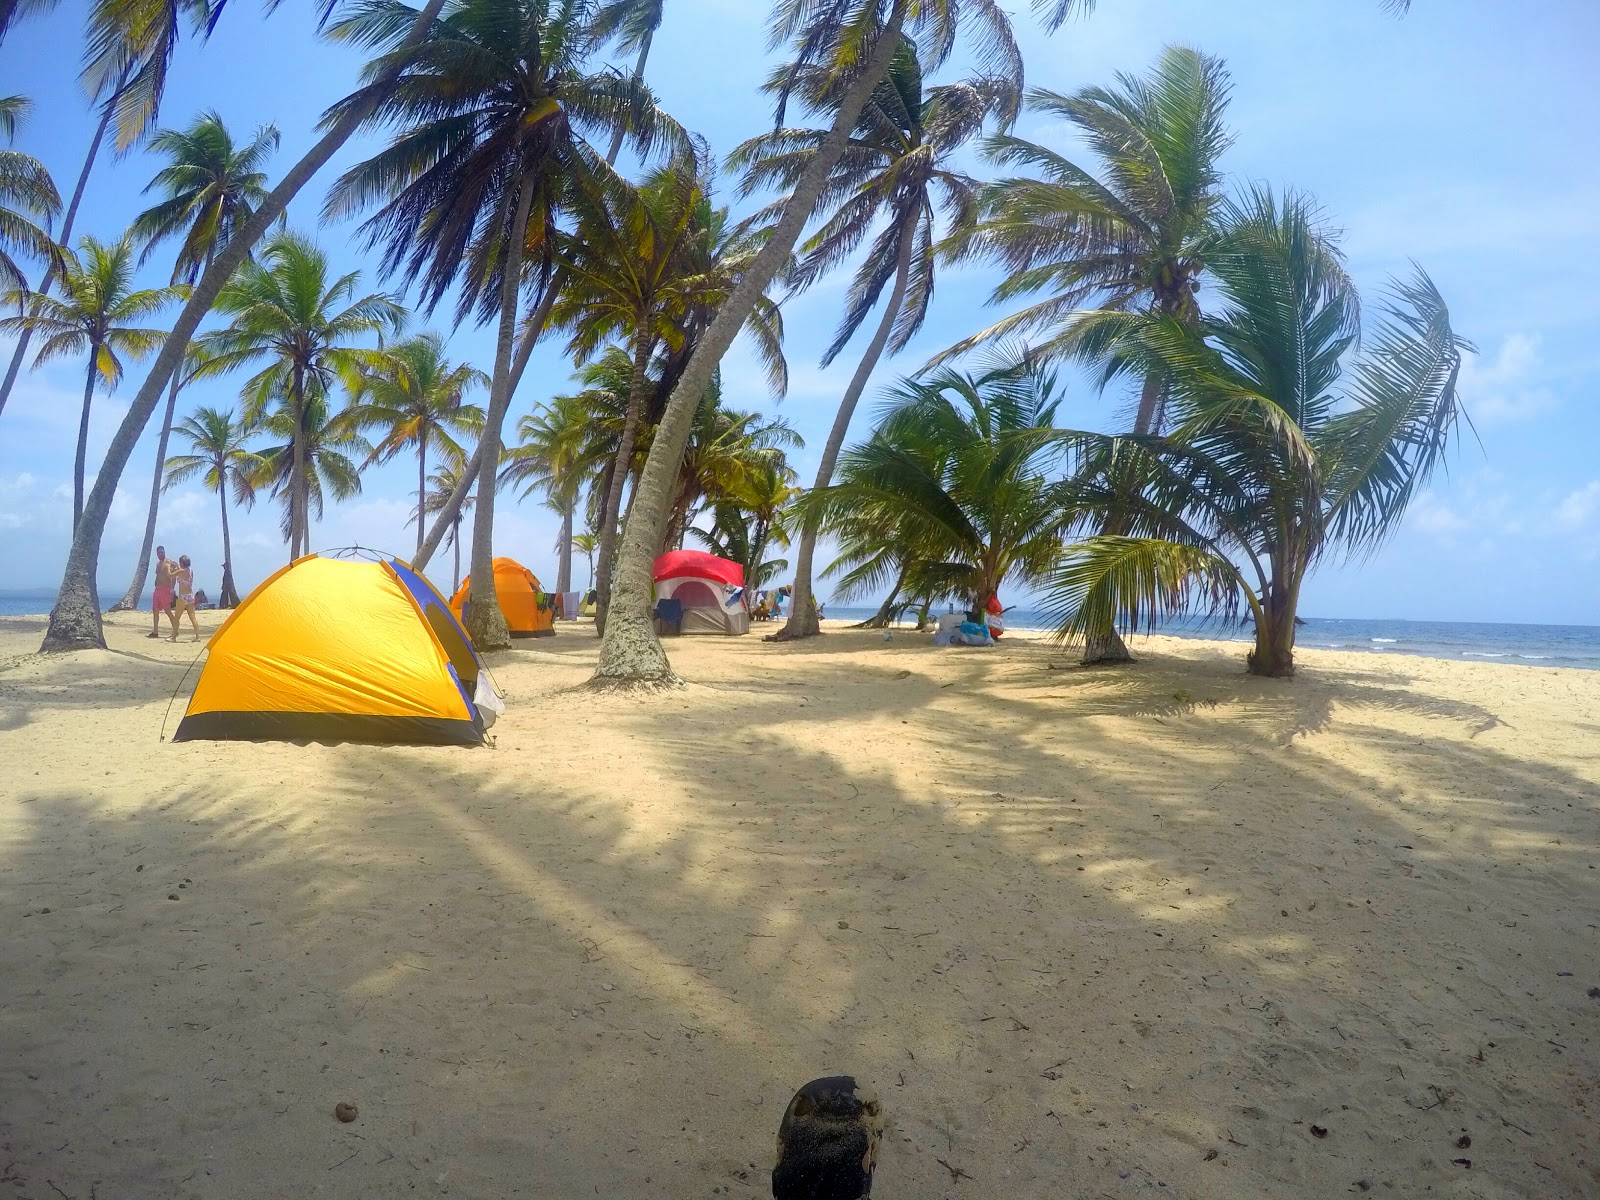 Foto von Iguana island beach befindet sich in natürlicher umgebung